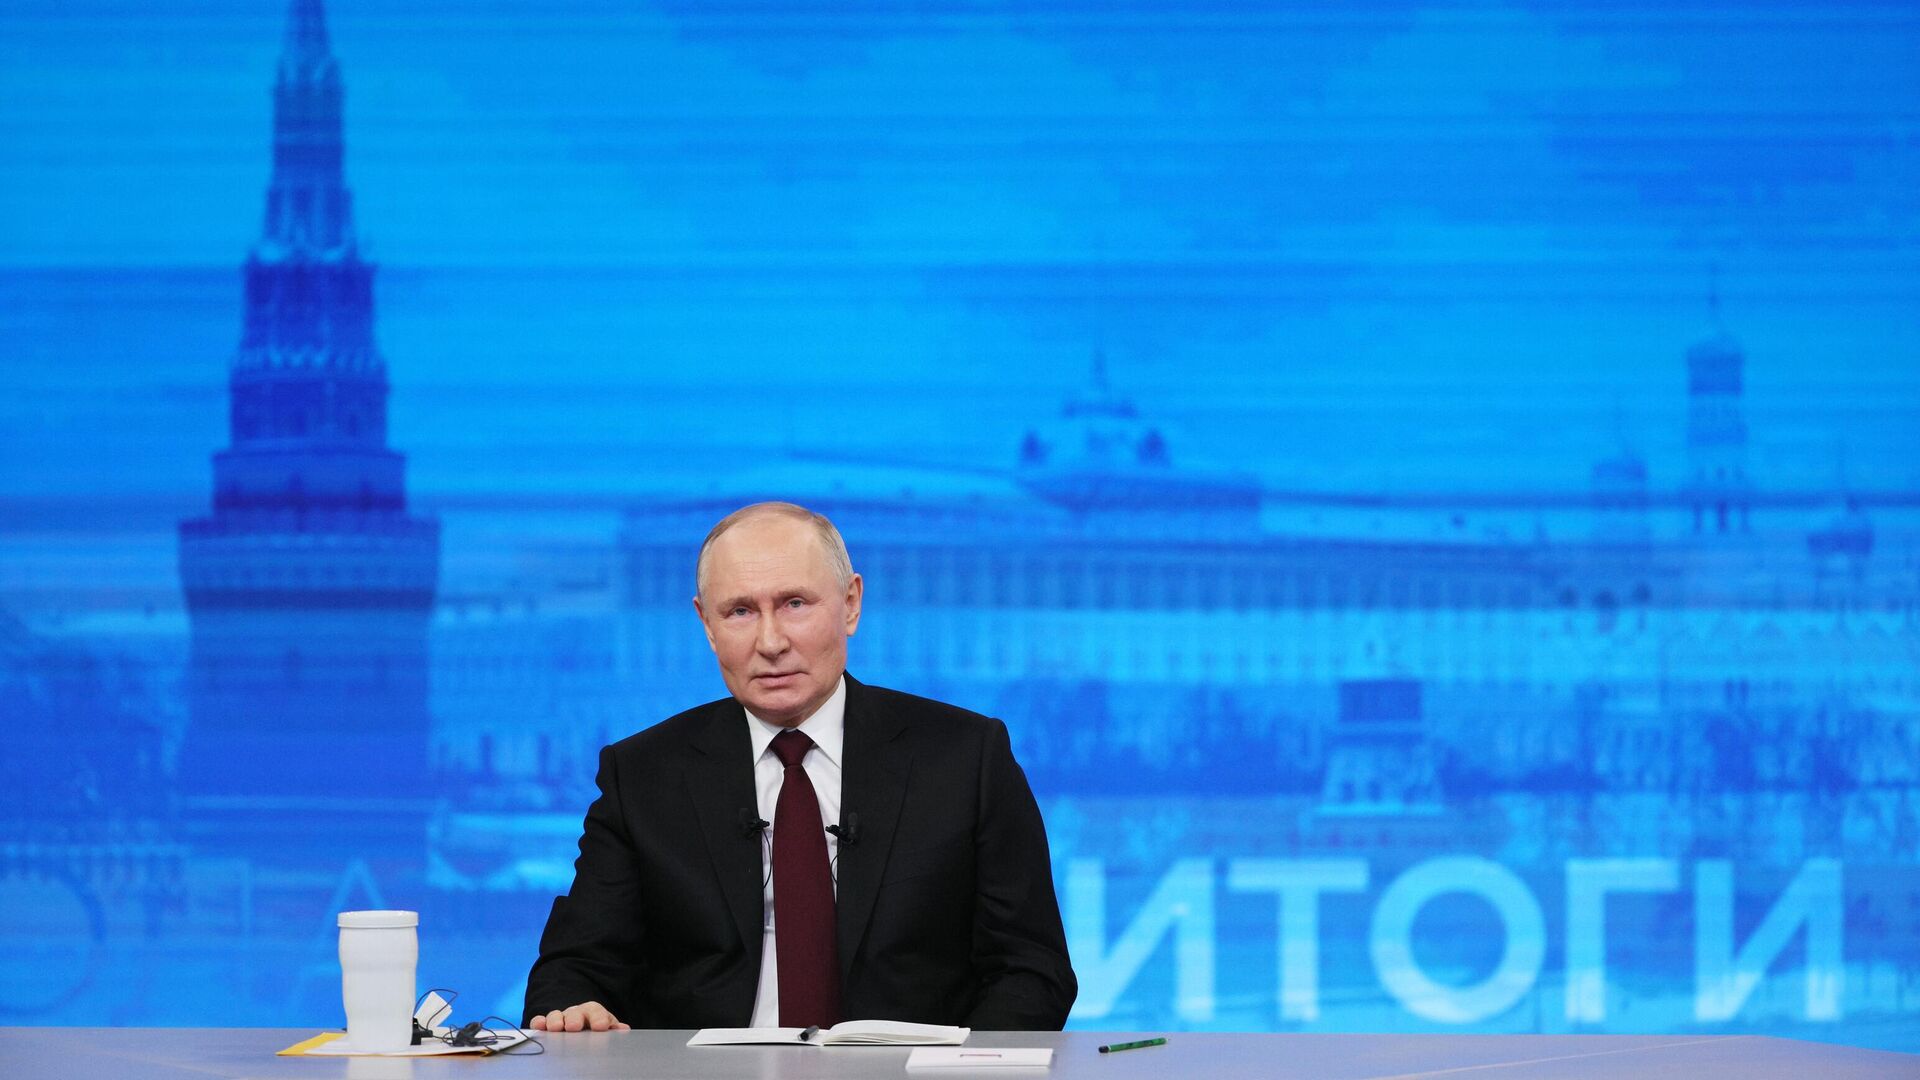 63 процента телезрителей посмотрели  "Итоги года с Владимиром Путиным"